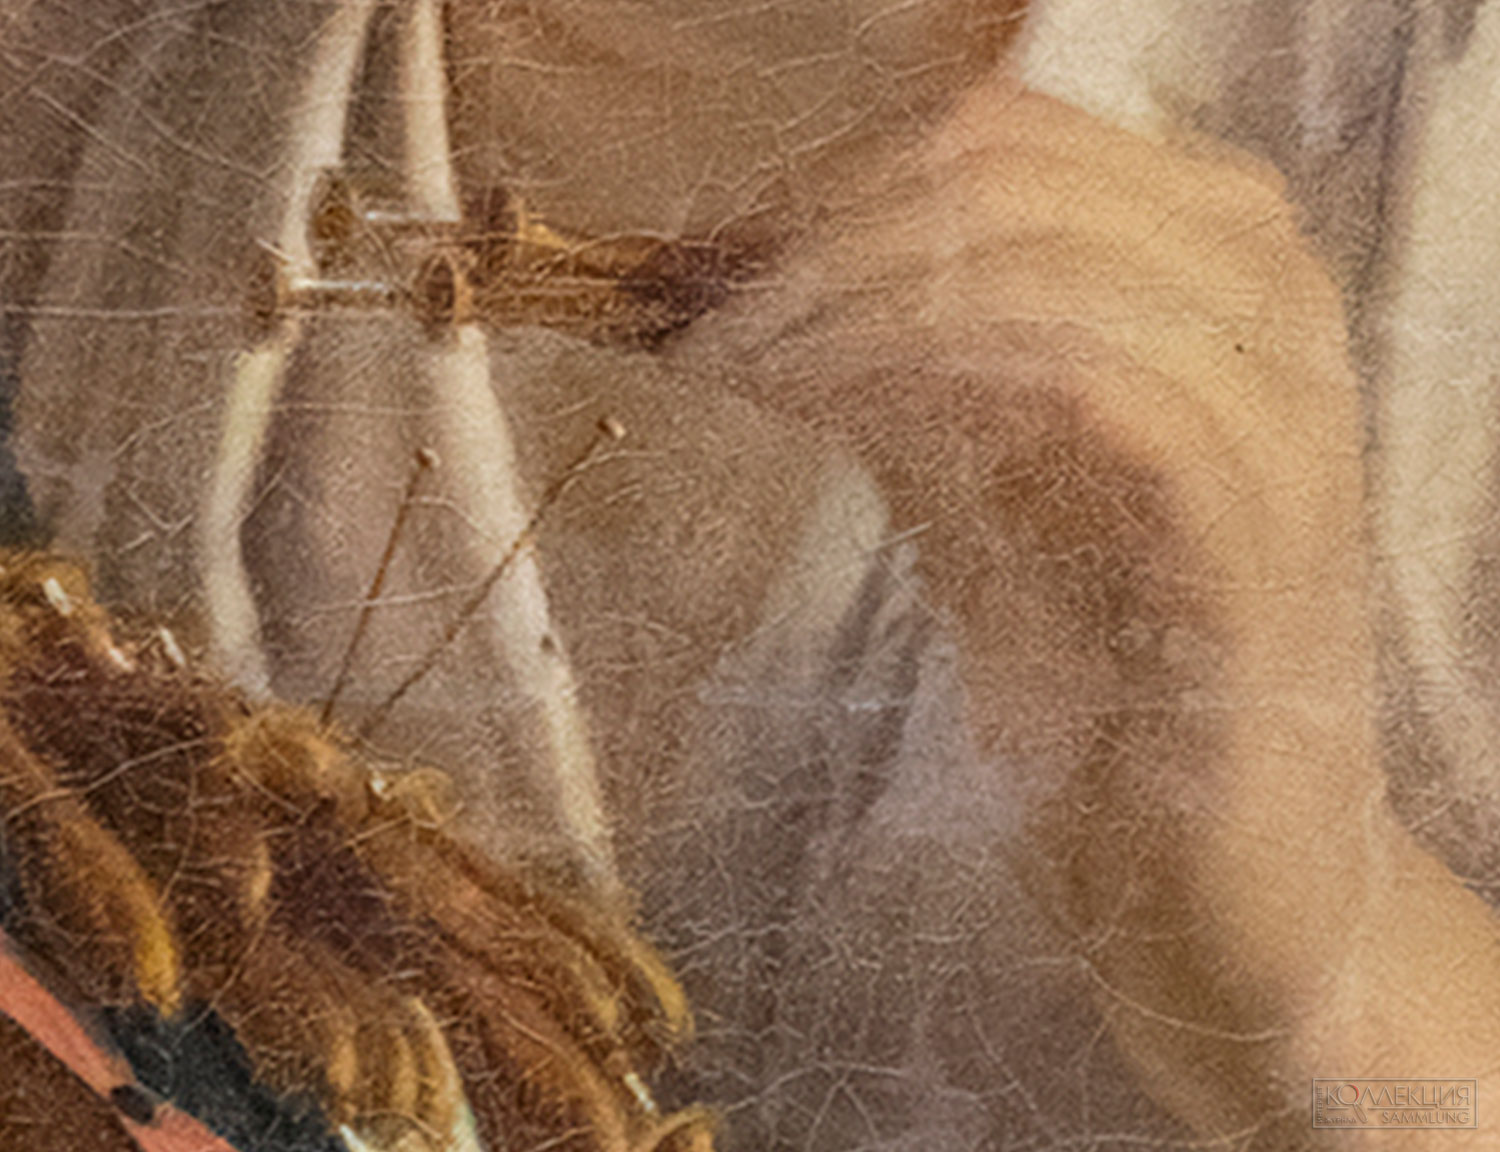 Тропинин В.А. Кружевница. 1820-е. Повторение одноименной картины (1823 ГТГ). Радищевский музей (фрагмент)